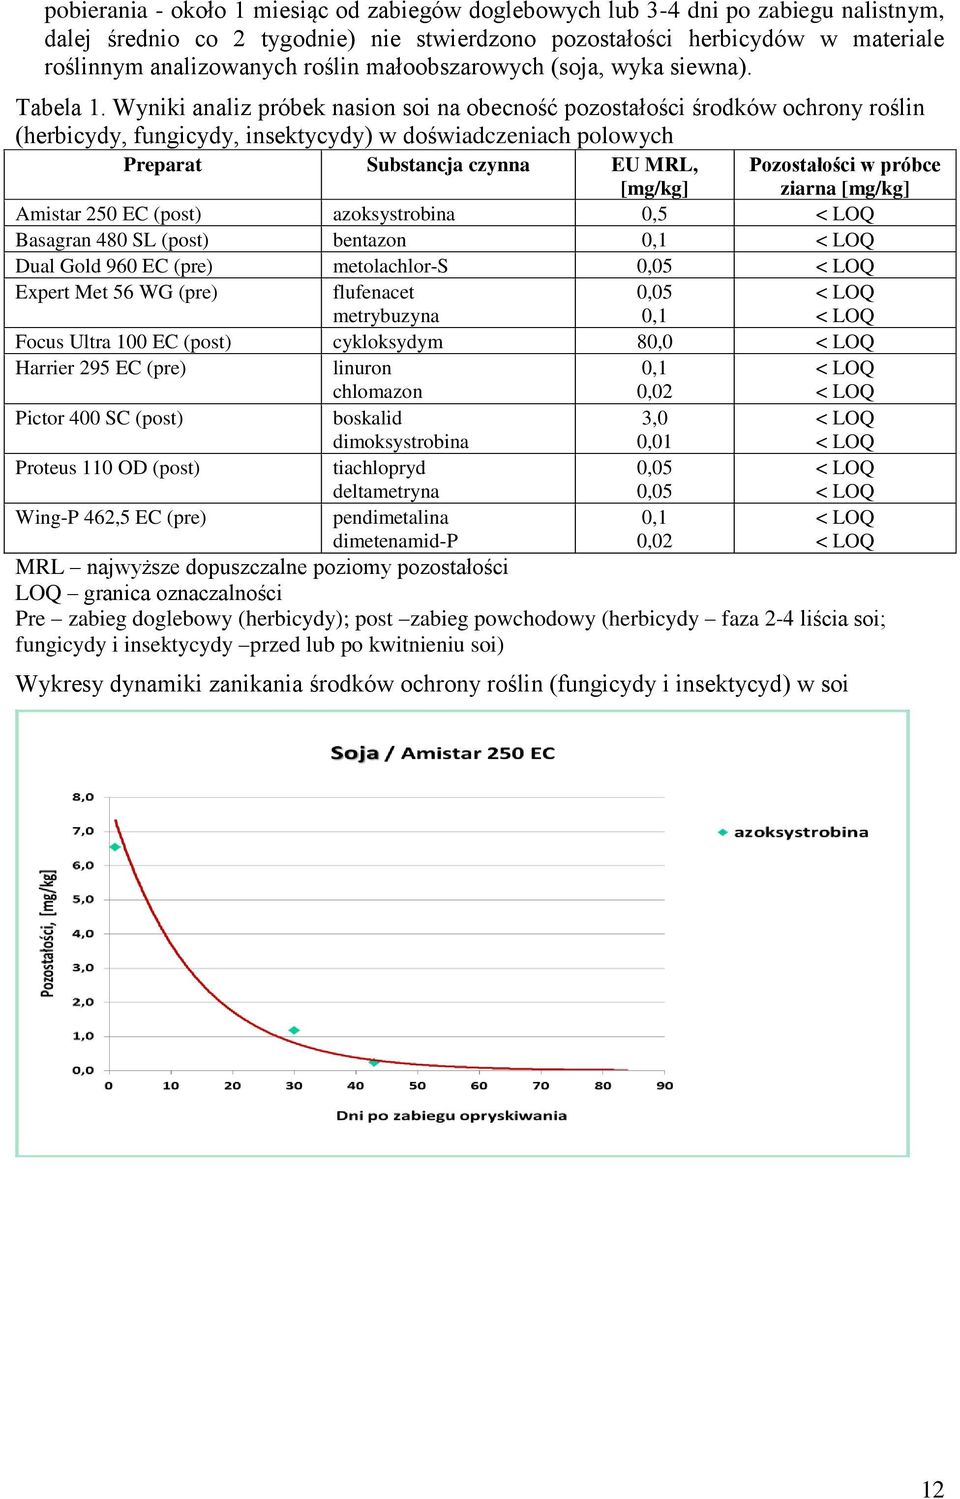 Wyniki analiz próbek nasion soi na obecność pozostałości środków ochrony roślin (herbicydy, fungicydy, insektycydy) w doświadczeniach polowych Preparat Substancja czynna EU MRL, Pozostałości w próbce